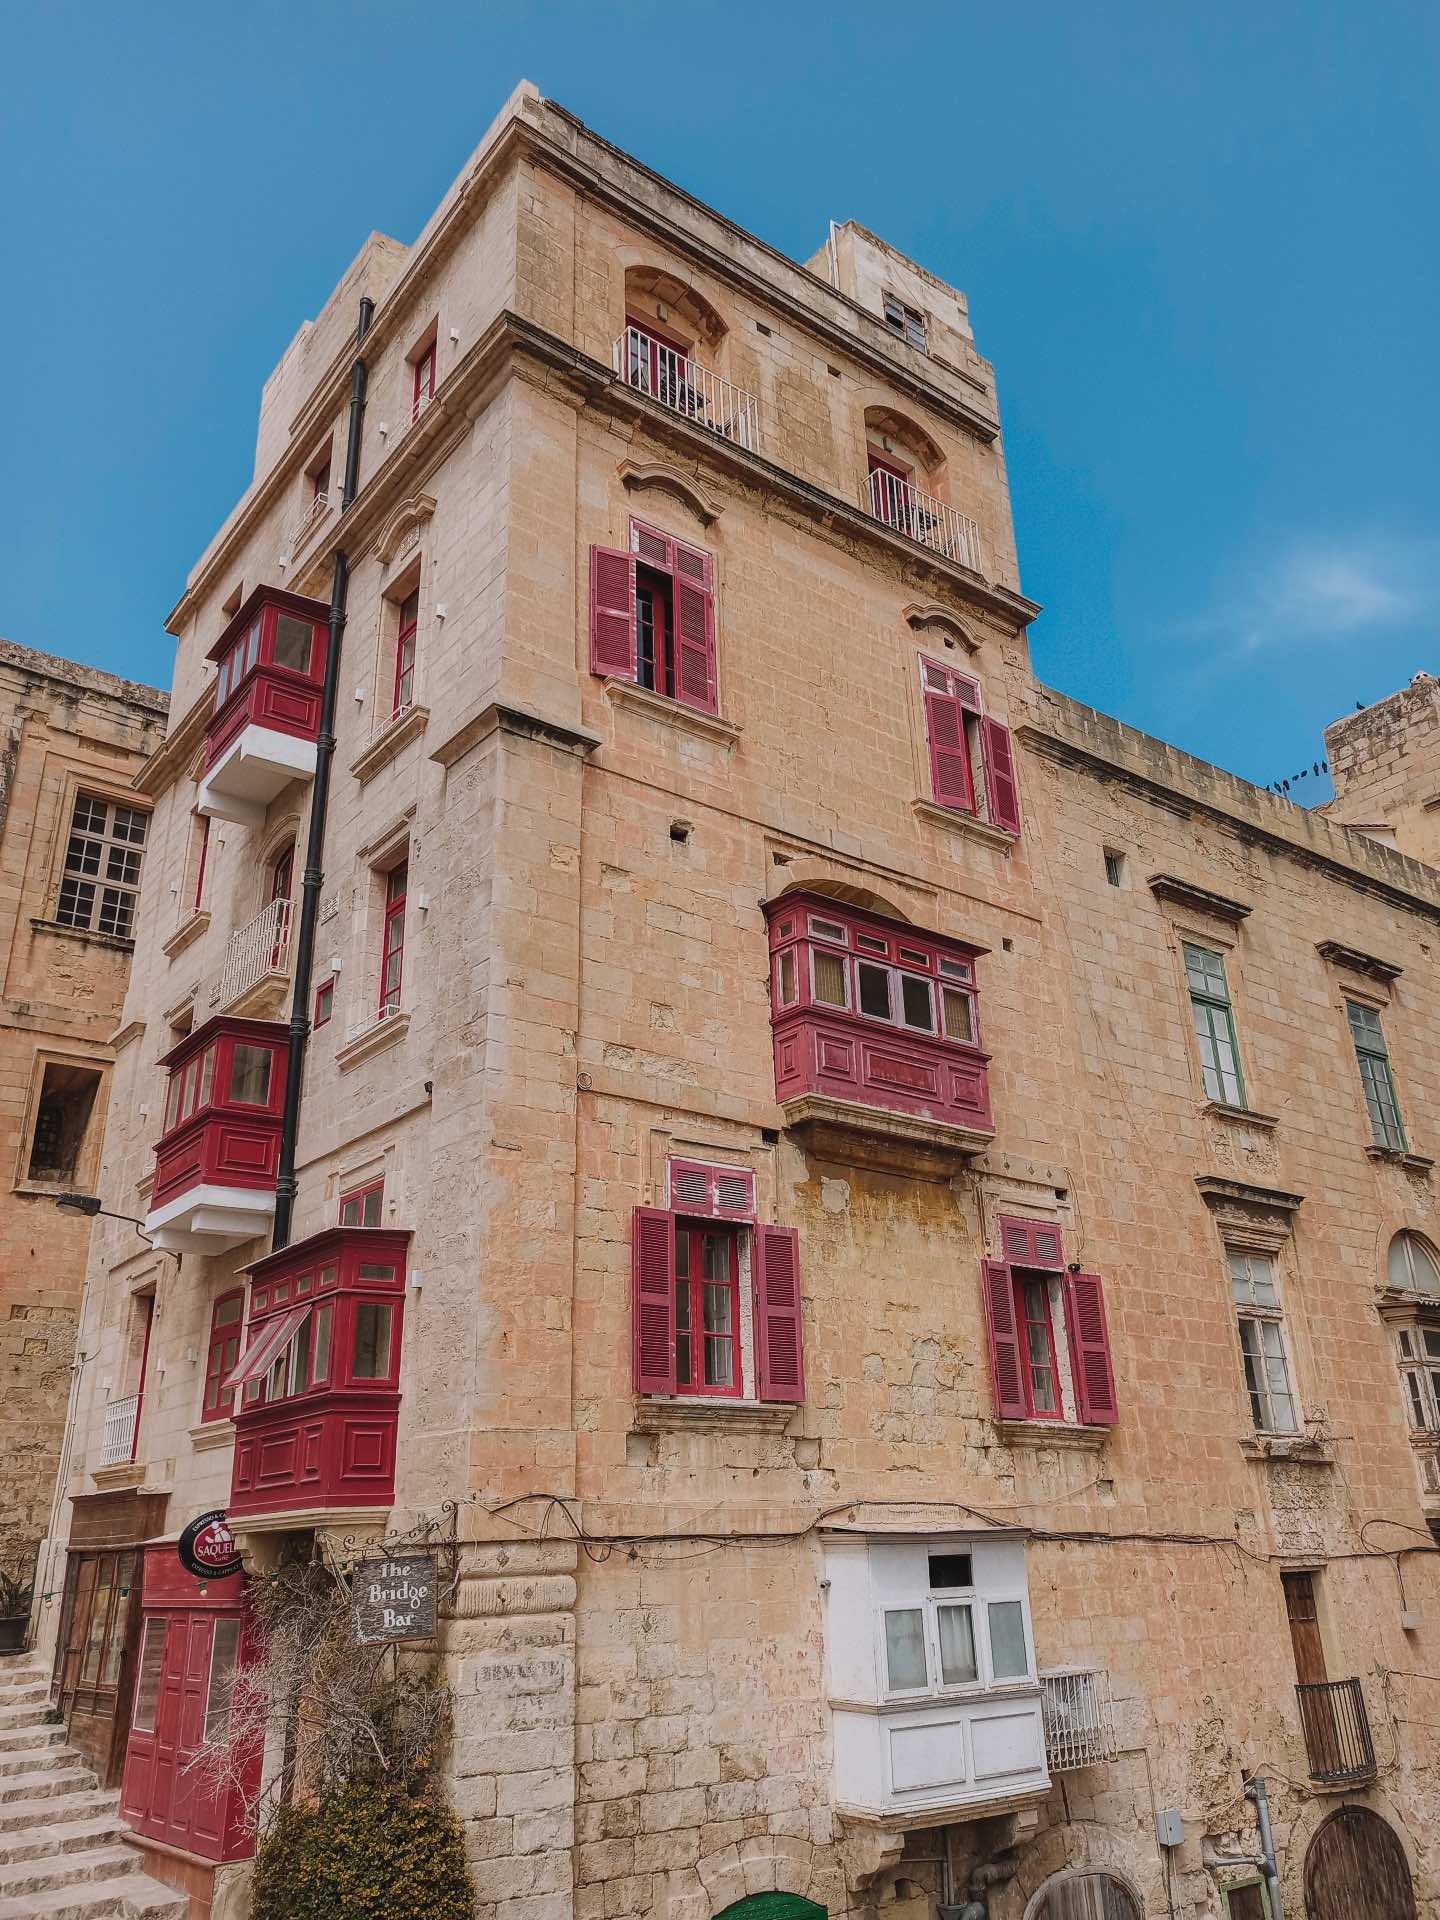 Calle Sant’ Orsla, los balcones de colores más bonitos de La Valletta